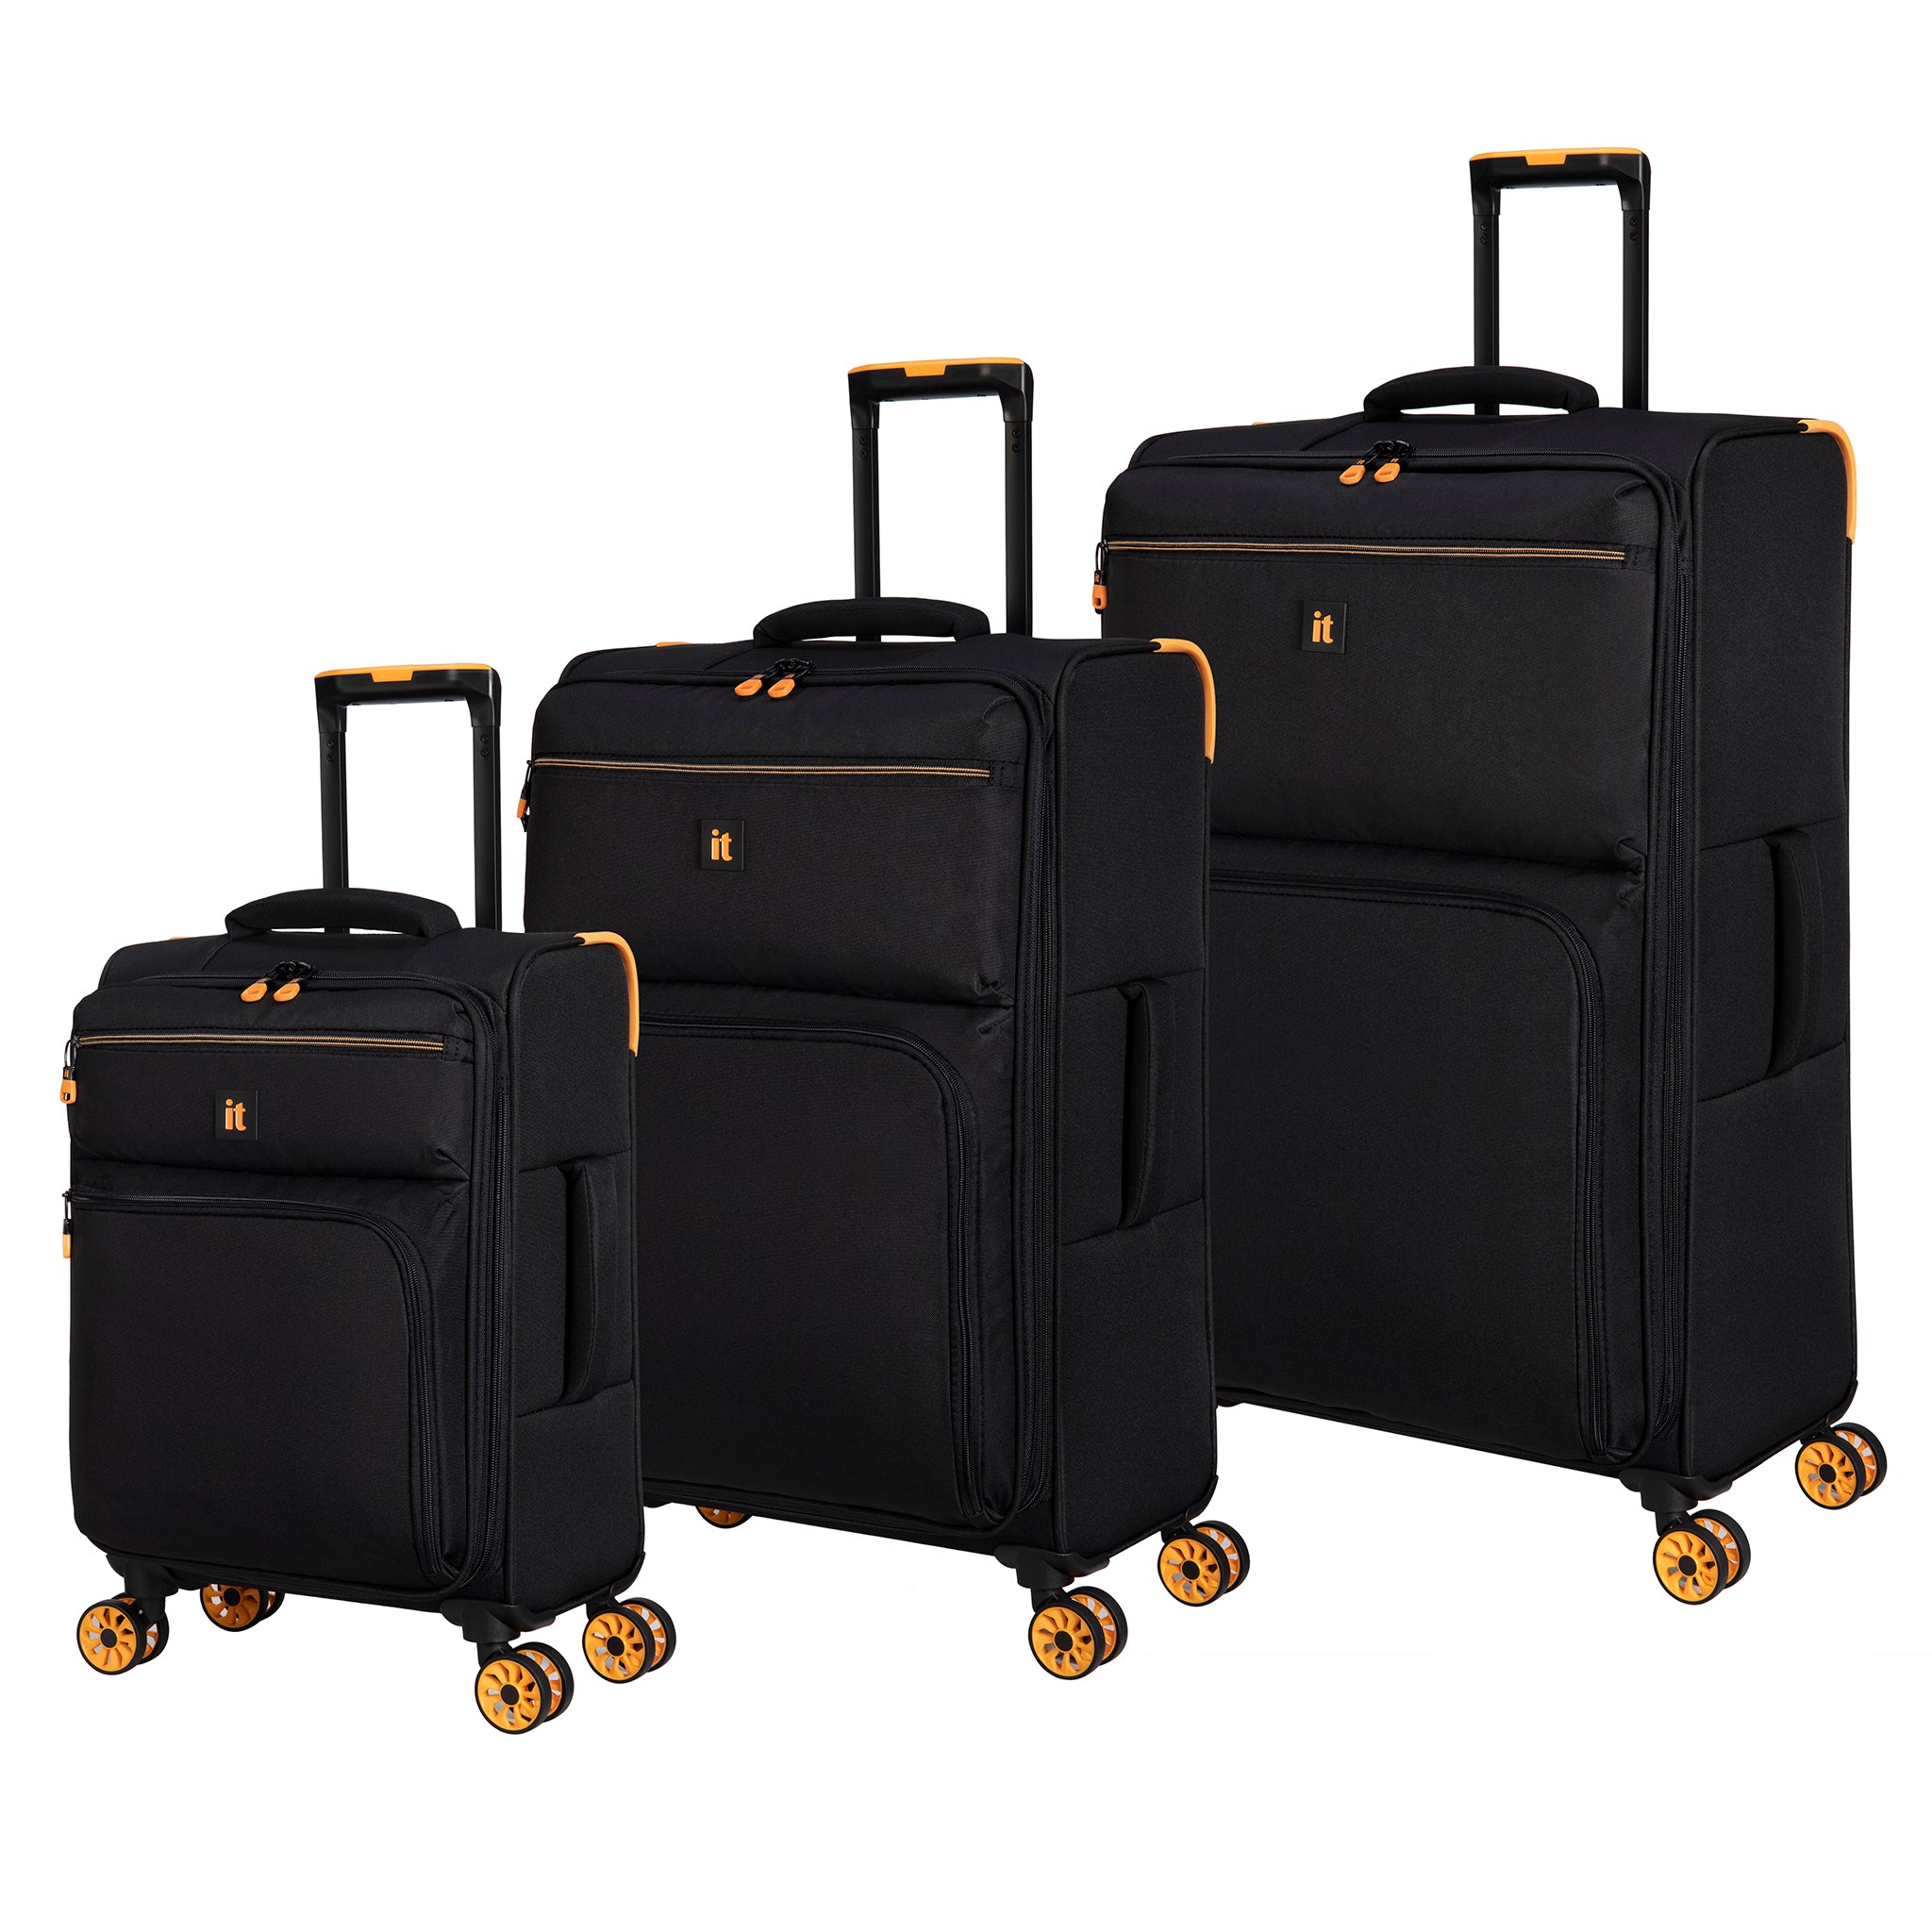 Black Suitcases u0026 Travel Luggage - it Luggage Europe